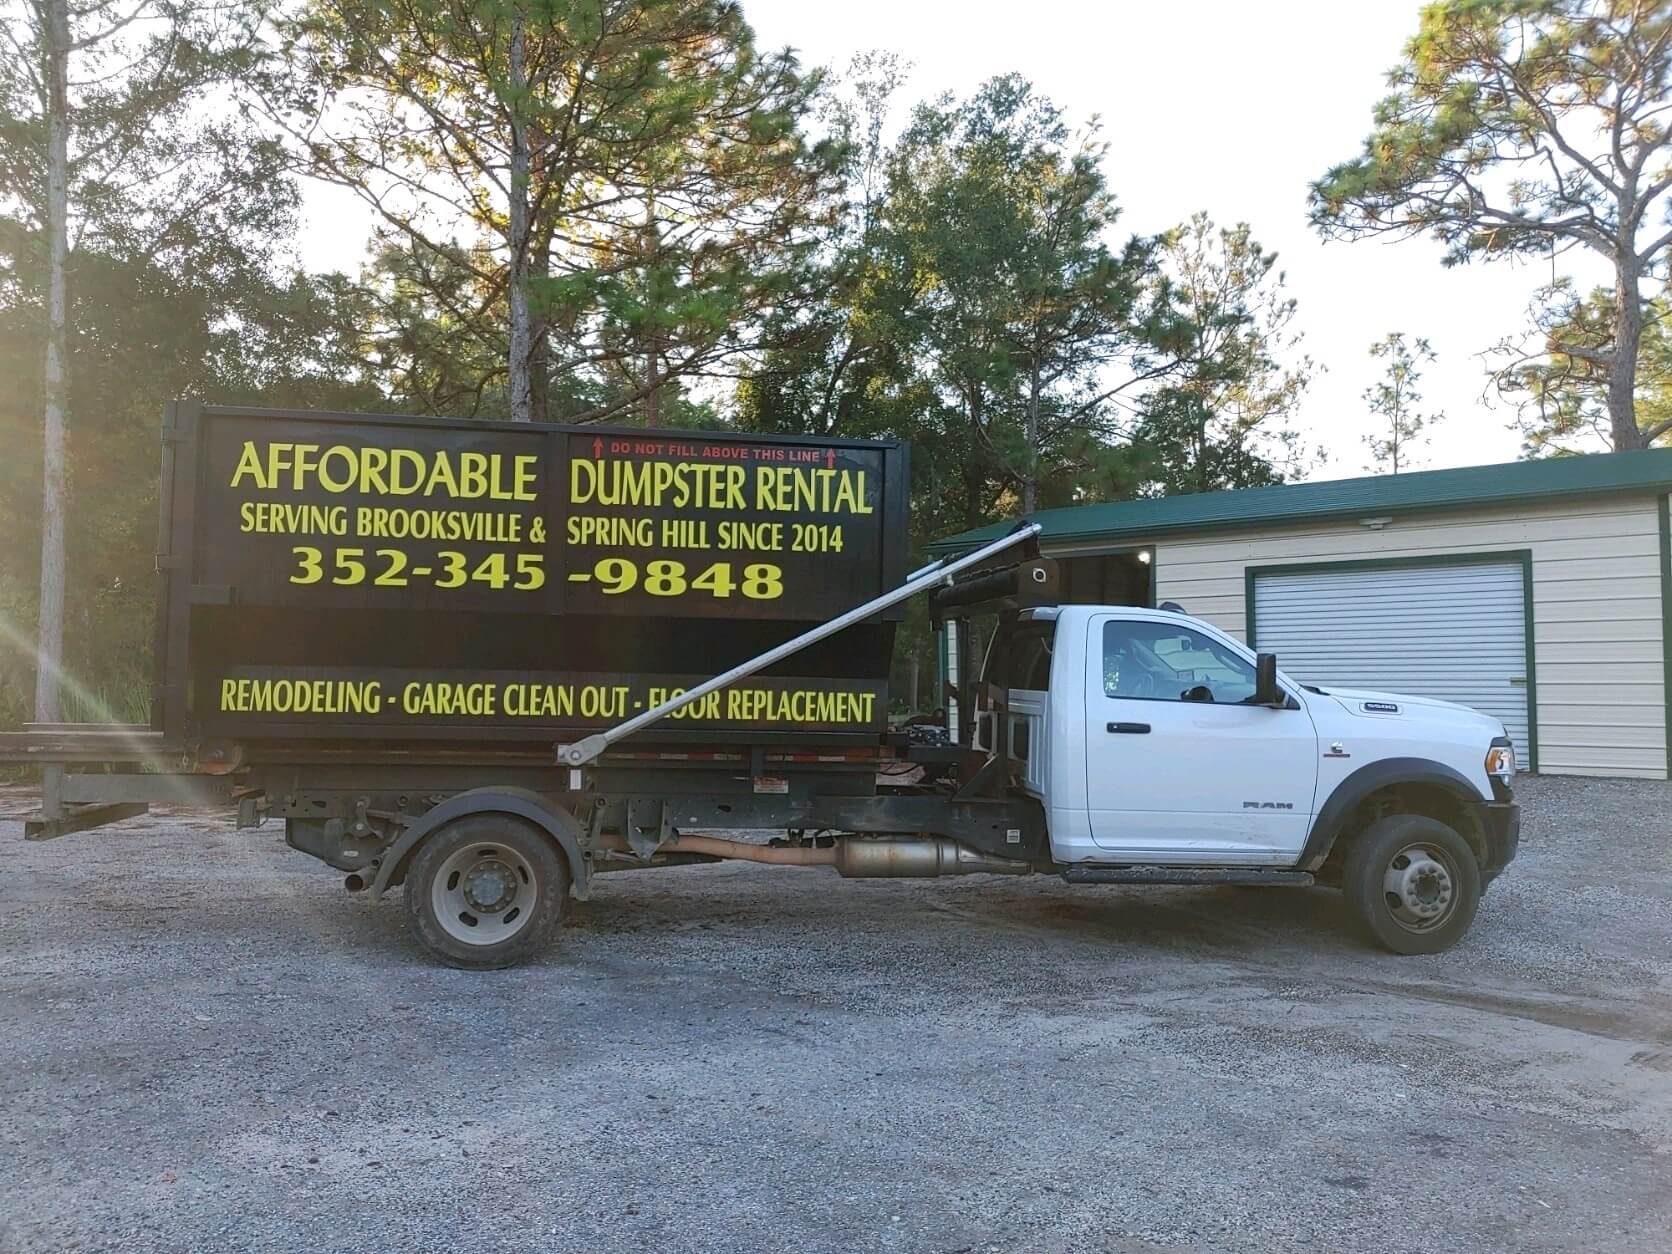 dumpster rental services